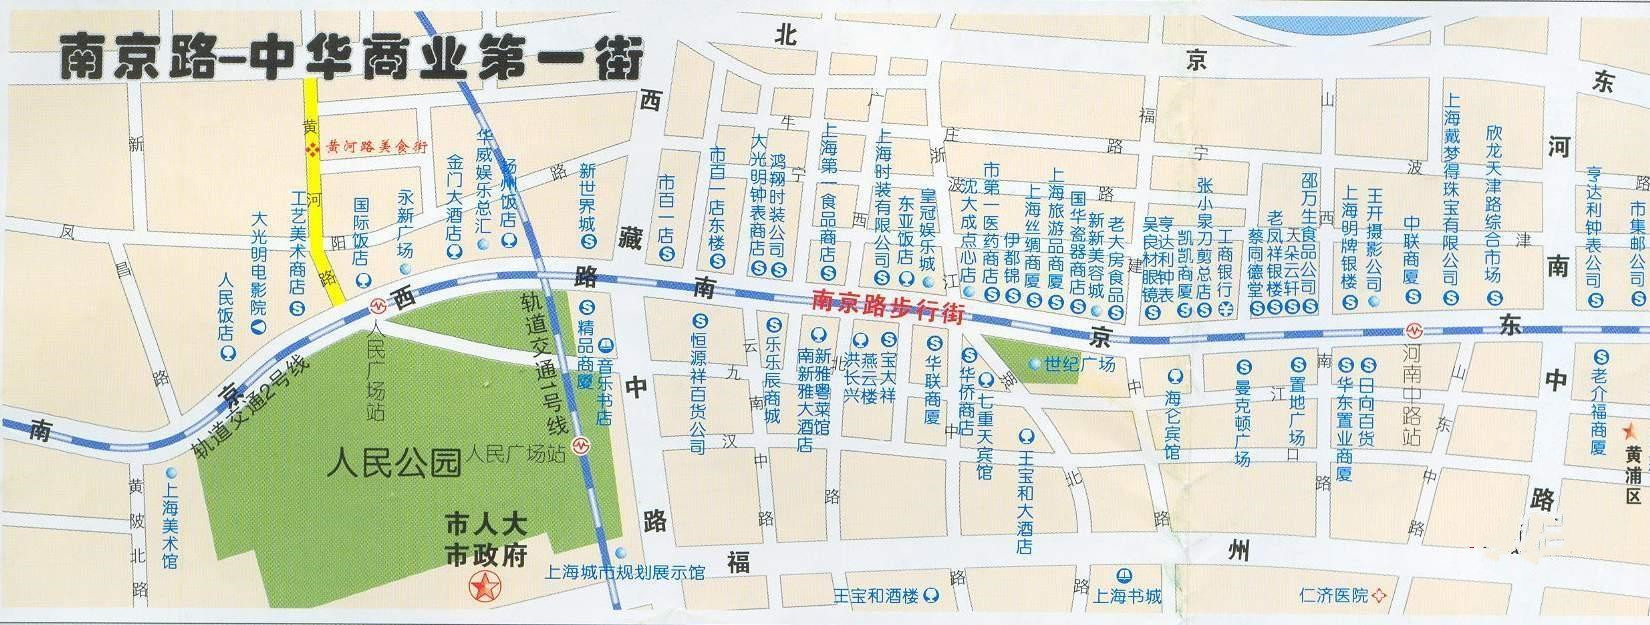 南京路步行街旅游导图